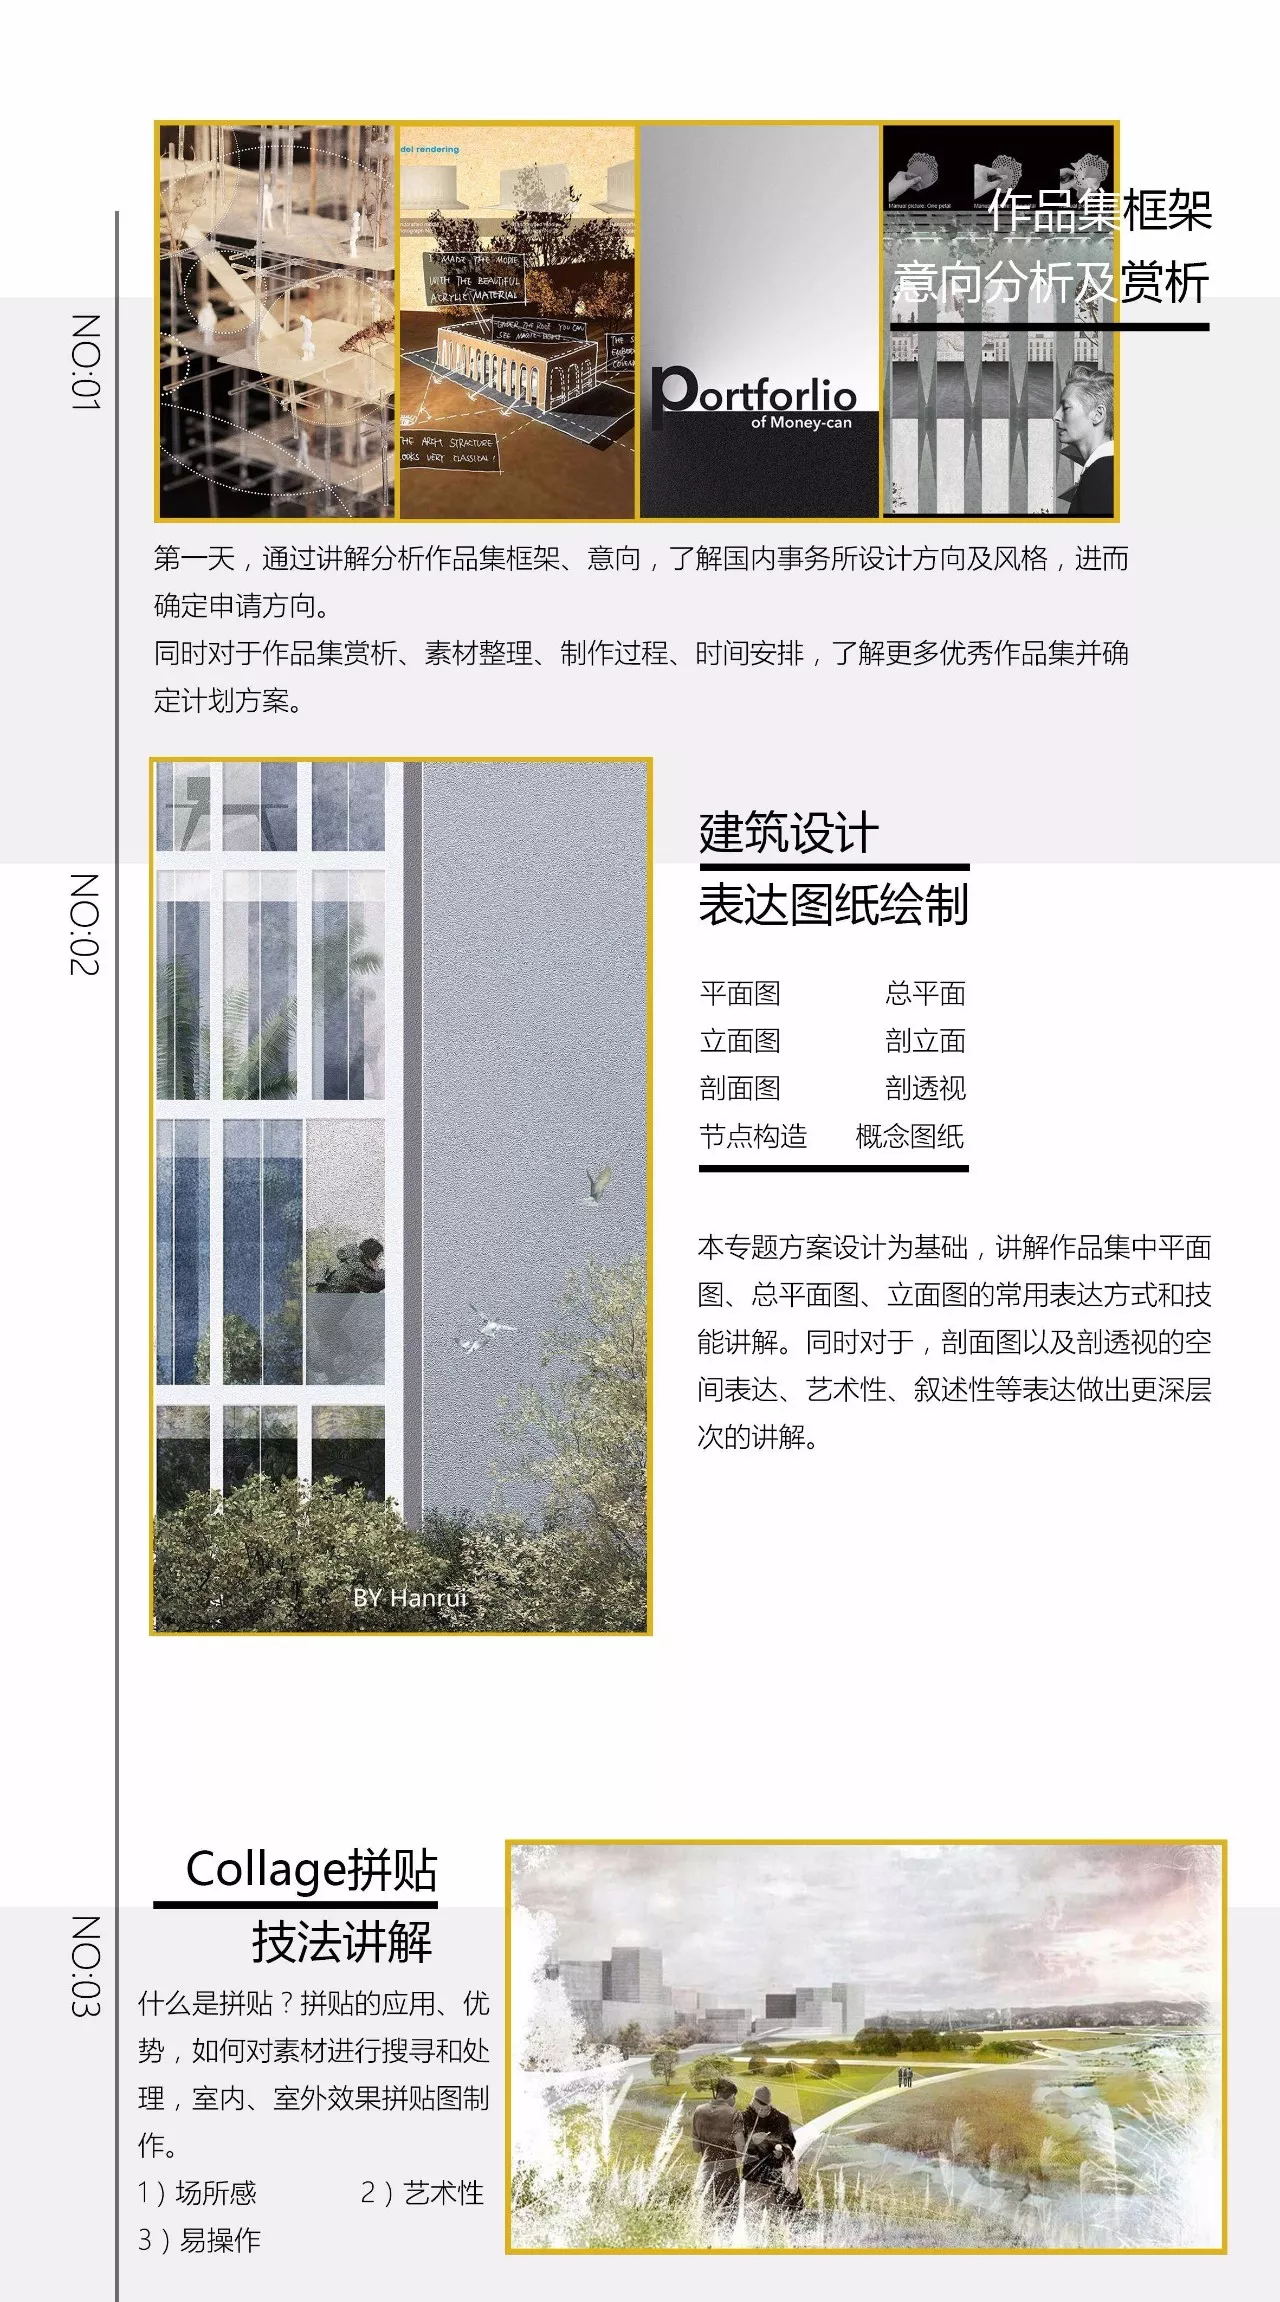 下载 (2)_看图王.web.jpg